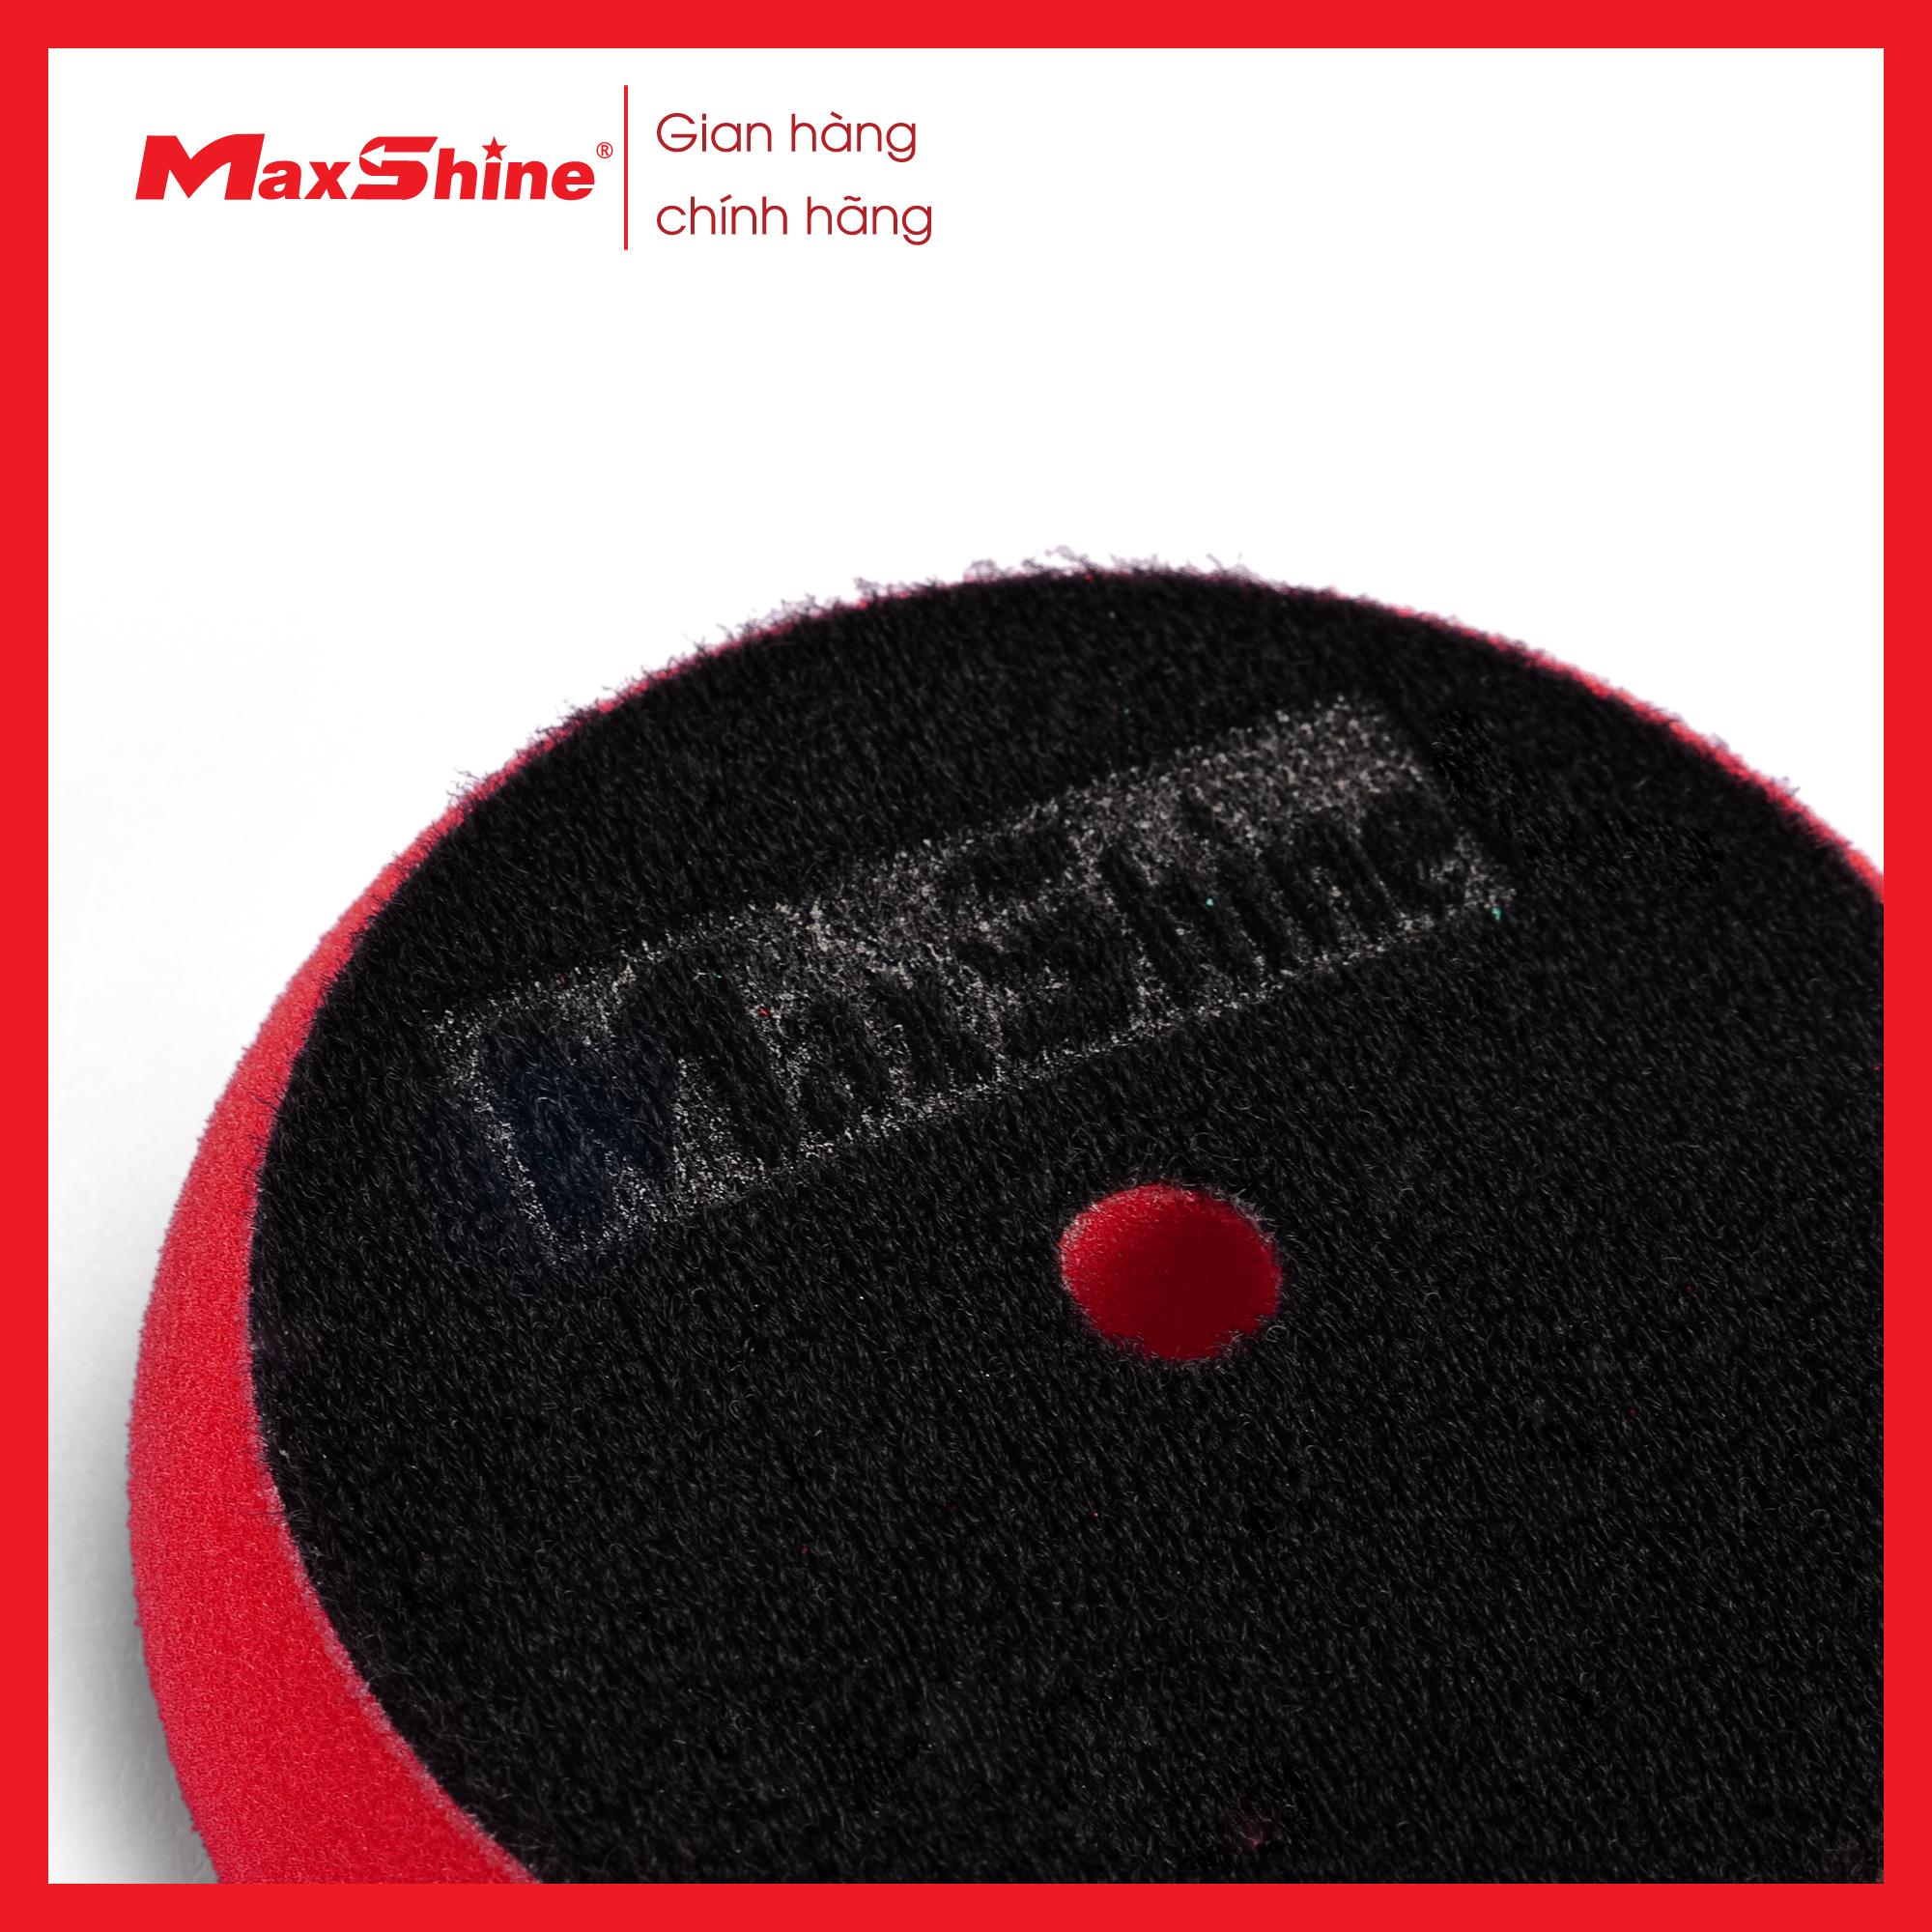 Phớt xốp/mút đánh bóng caro bước 3 kích thước 3 inch Maxshine 2003090R được làm từ xốp mềm màu đỏ, cắt chéo bề mặt, chống ăn mòn với hóa chất.